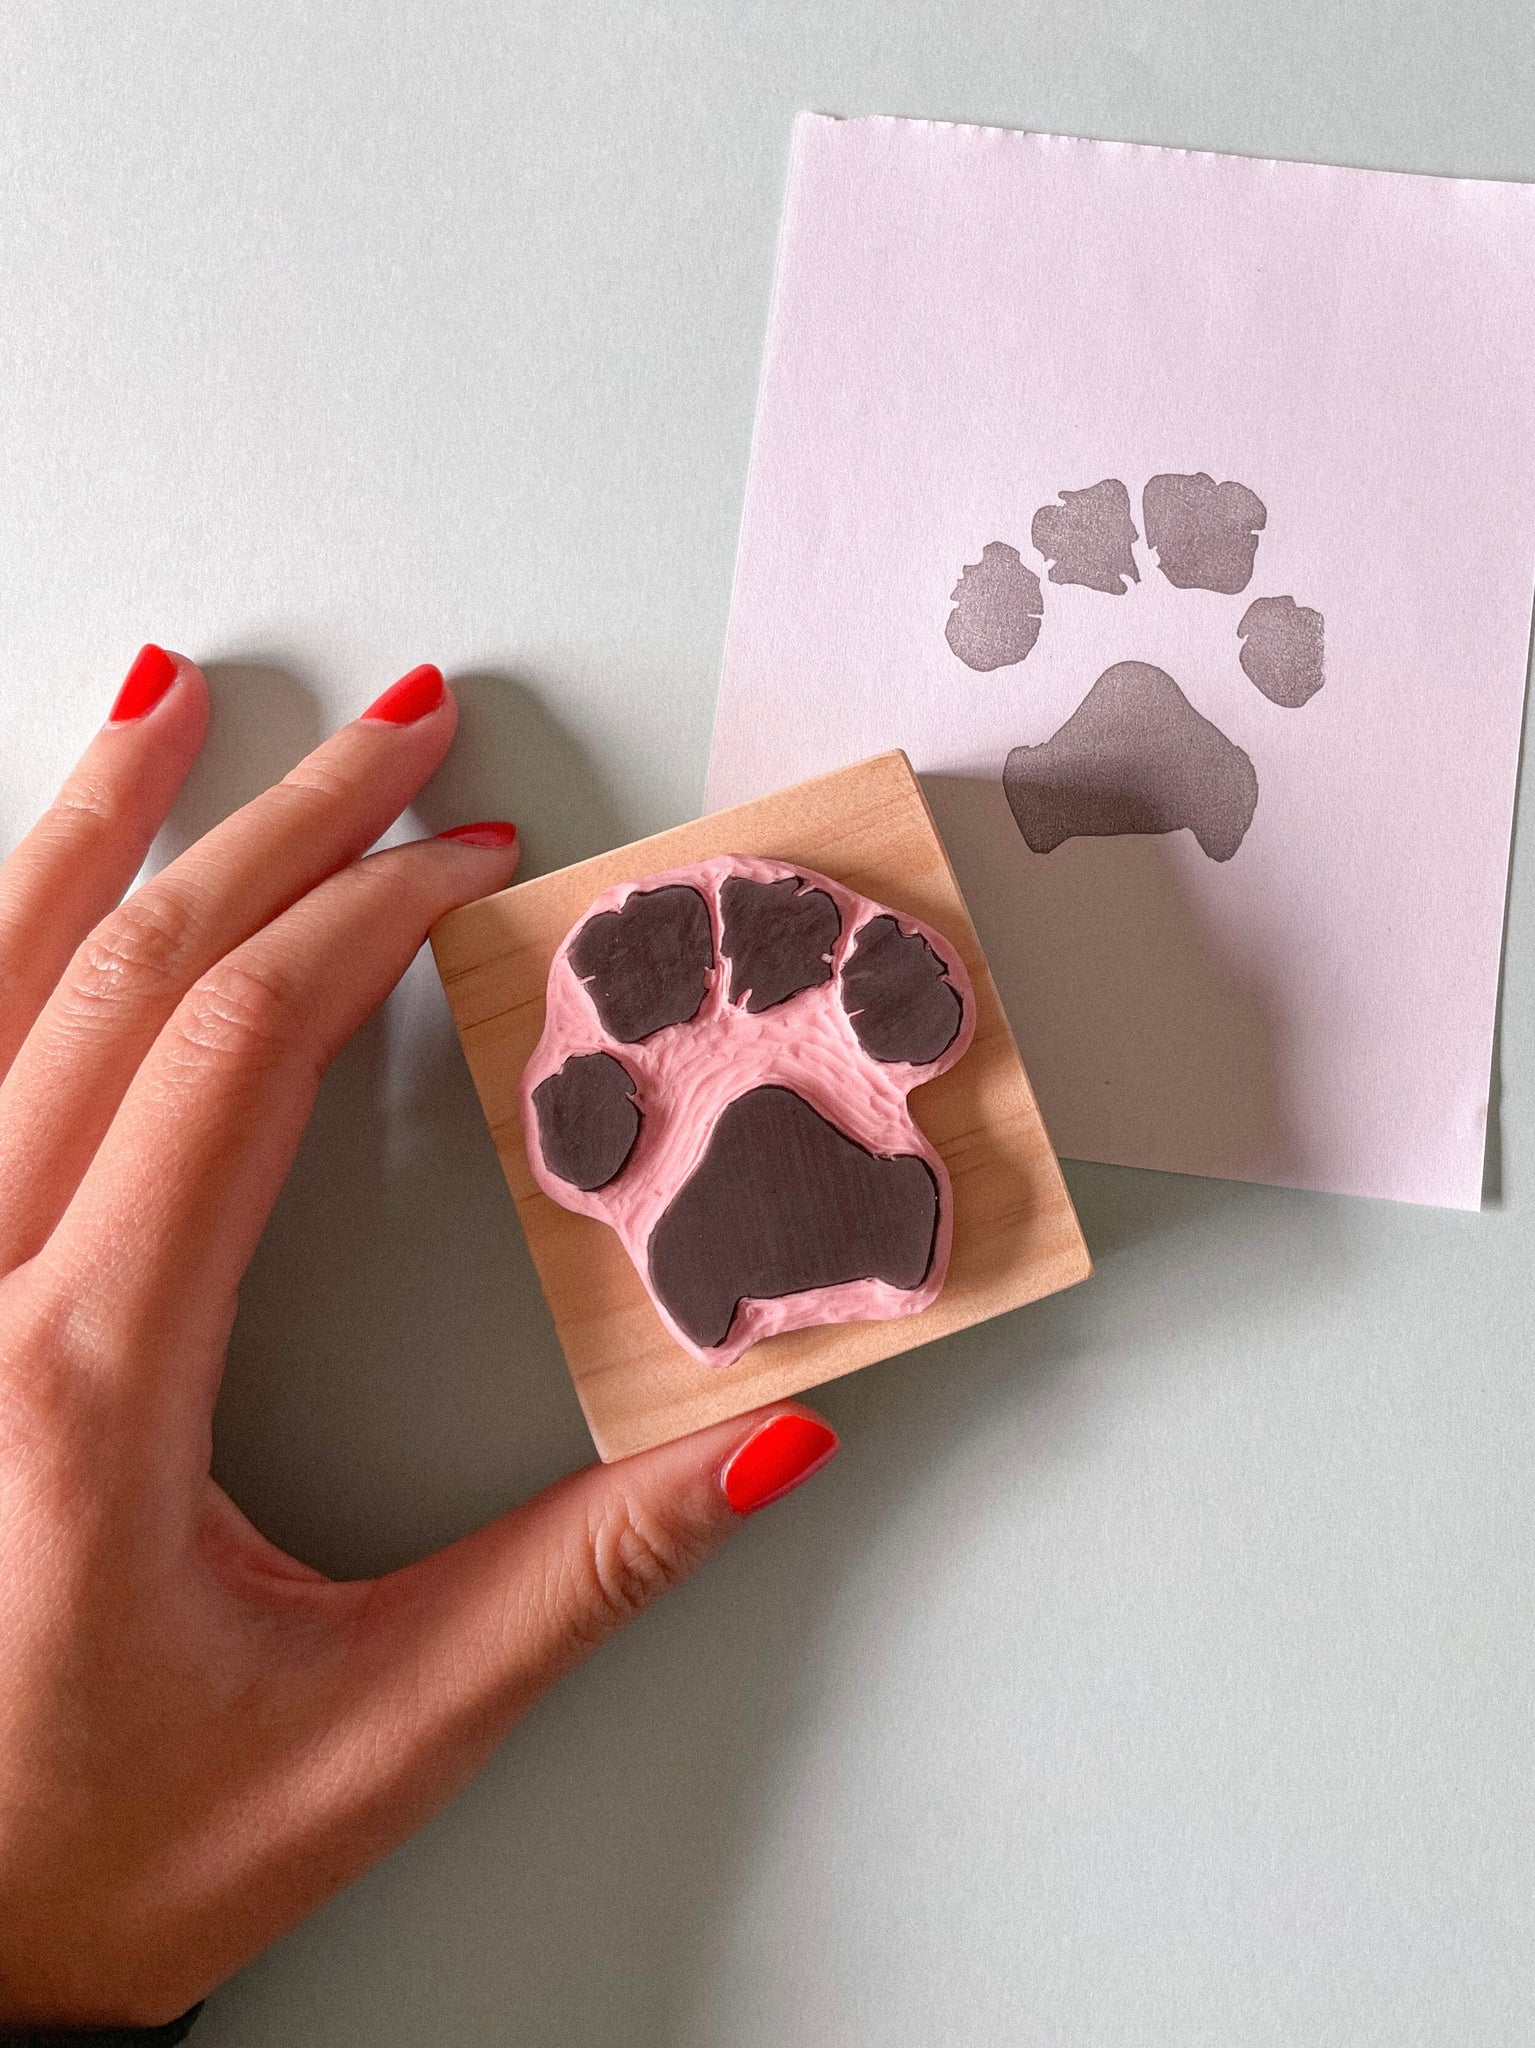 Animal Paw Print Self-Inking Stamp